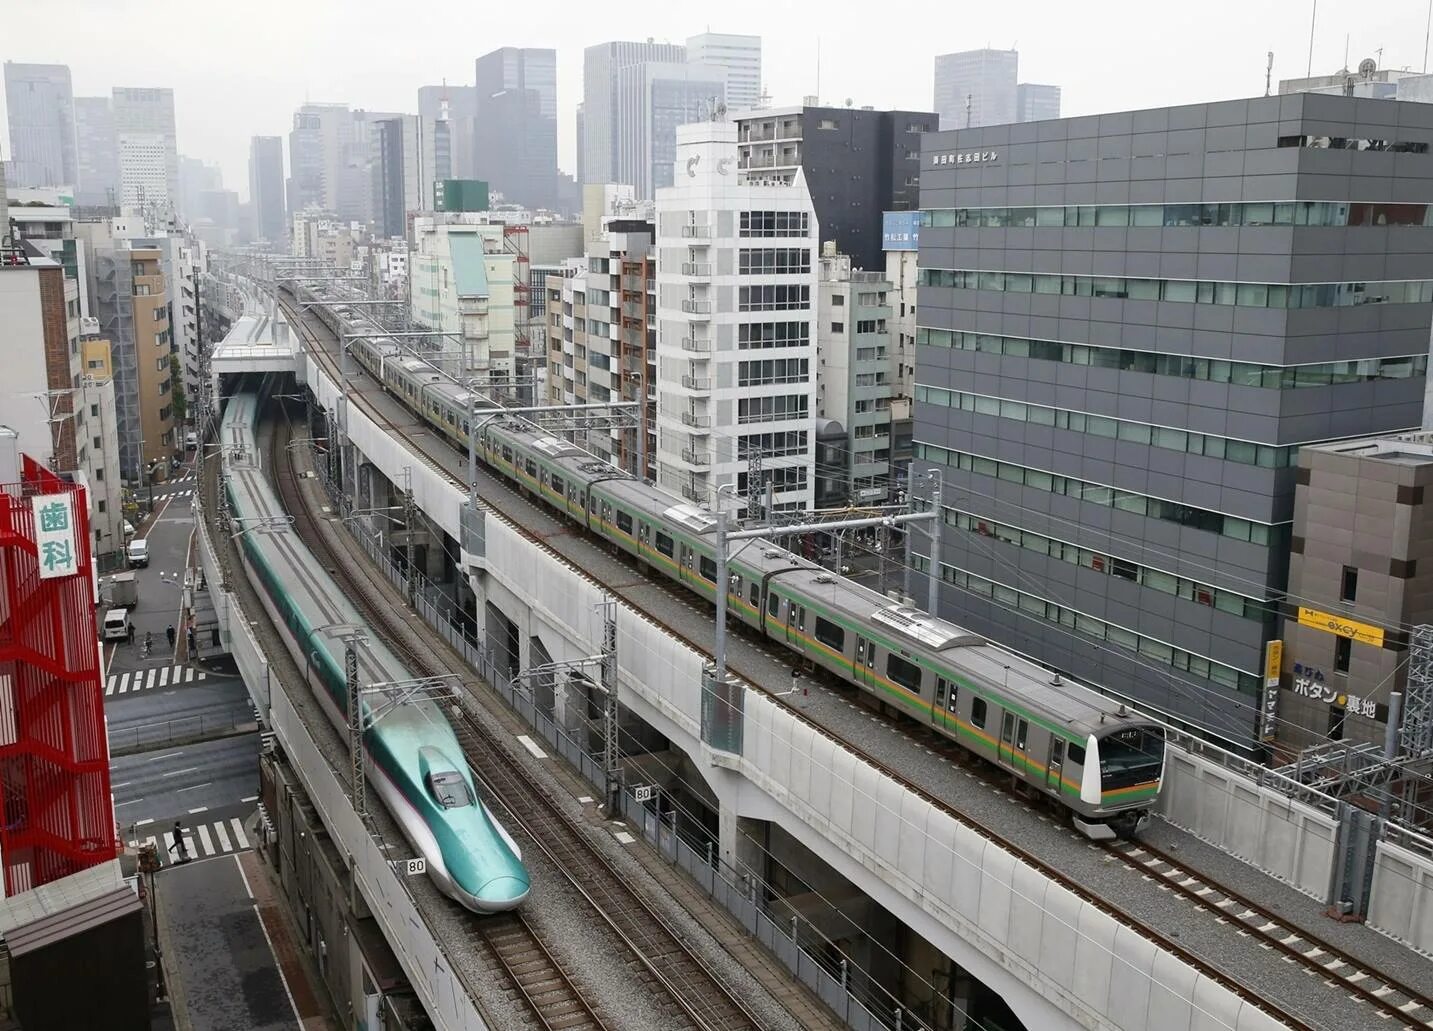 Железные дороги японии. Поезда монорельс Токио. Надземное метро Токио. Станция надземное метро Токио. Япония, Токио — Осака железная дорога.